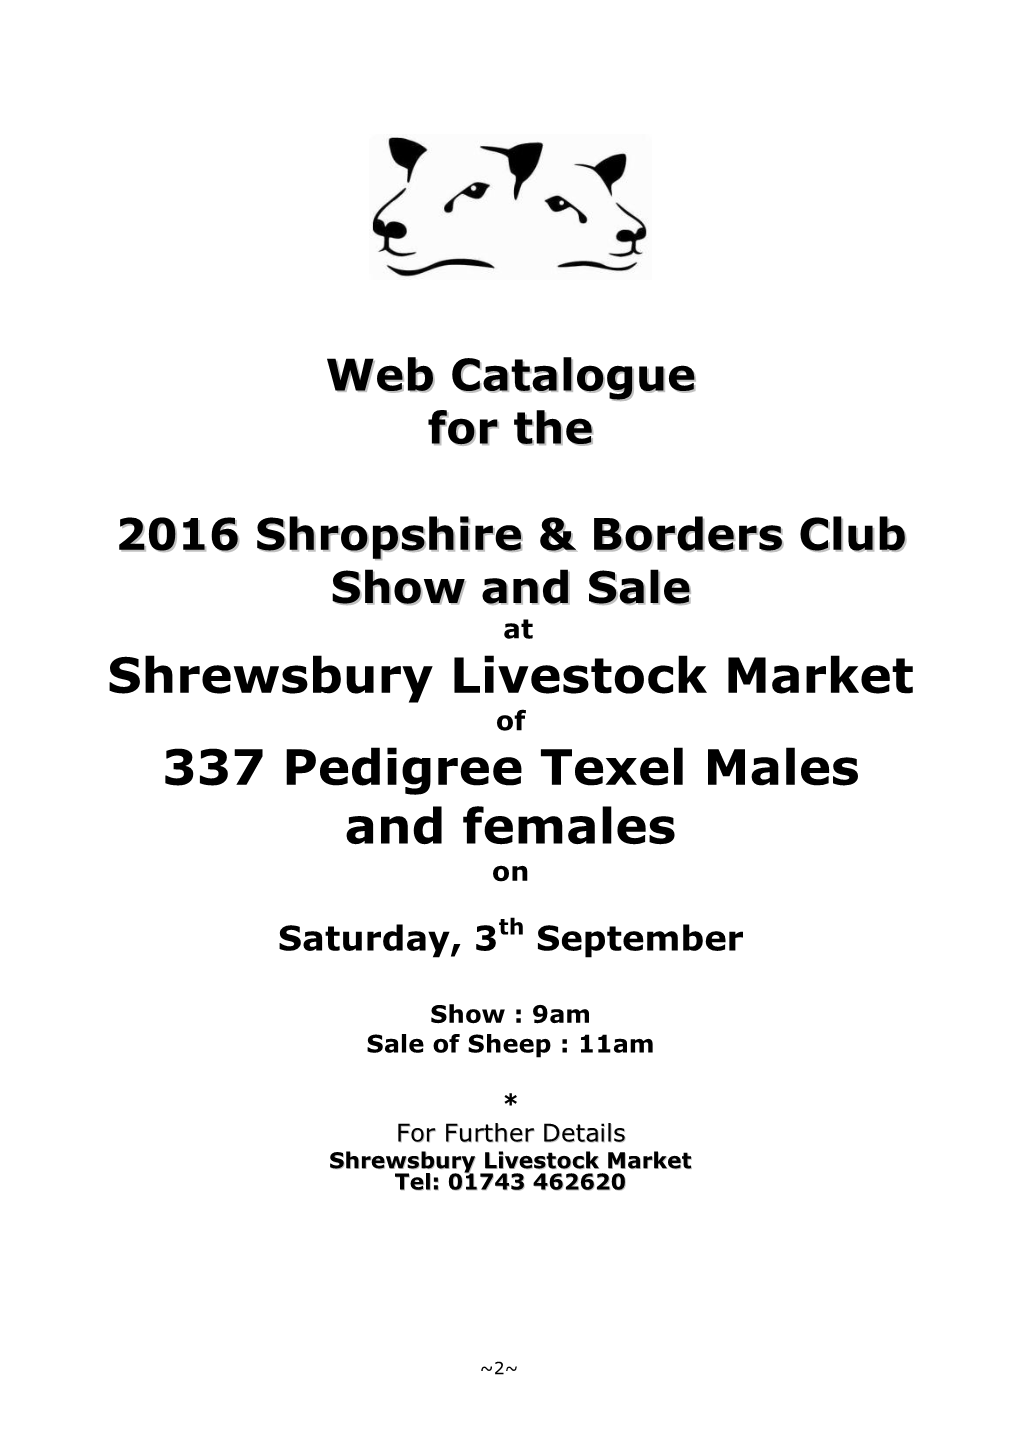 Shropshire & Borders Shrewsbury